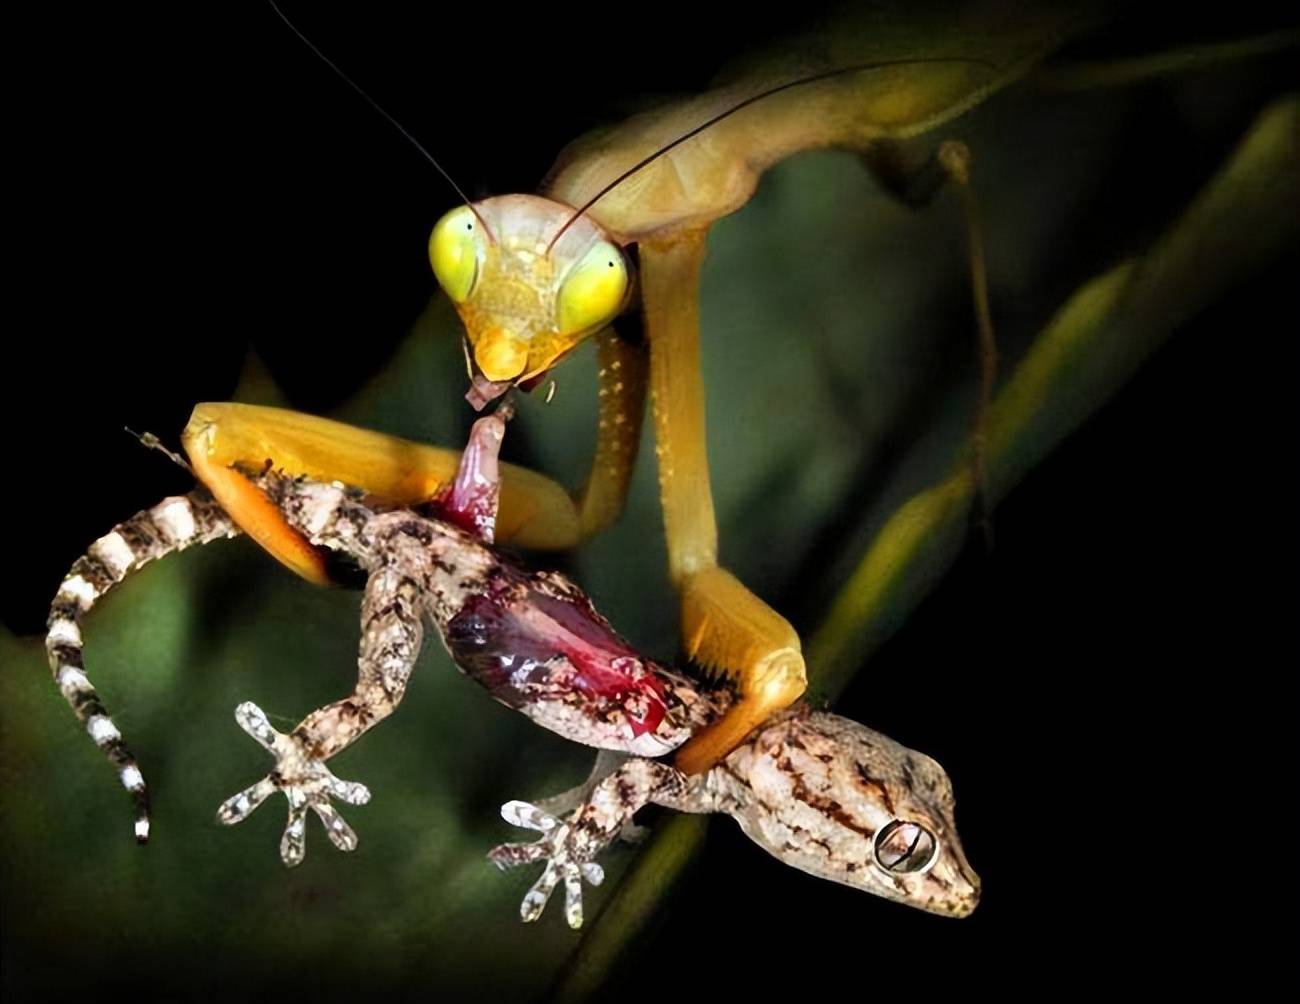 母螳螂在吃自己的"丈夫"时,为什么雄螳螂不反抗也不逃走?